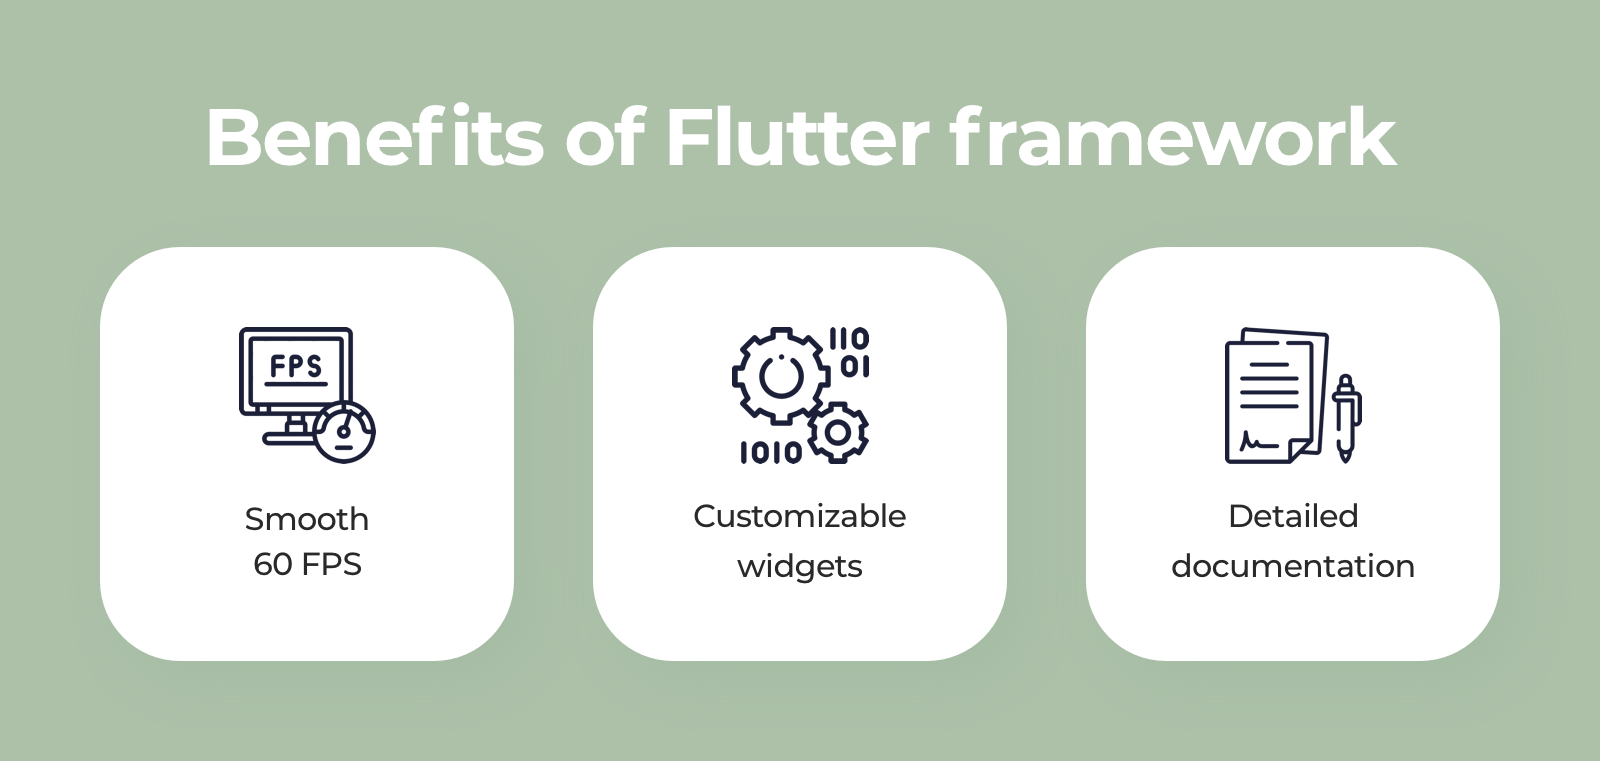 Benefits of Flutter framework